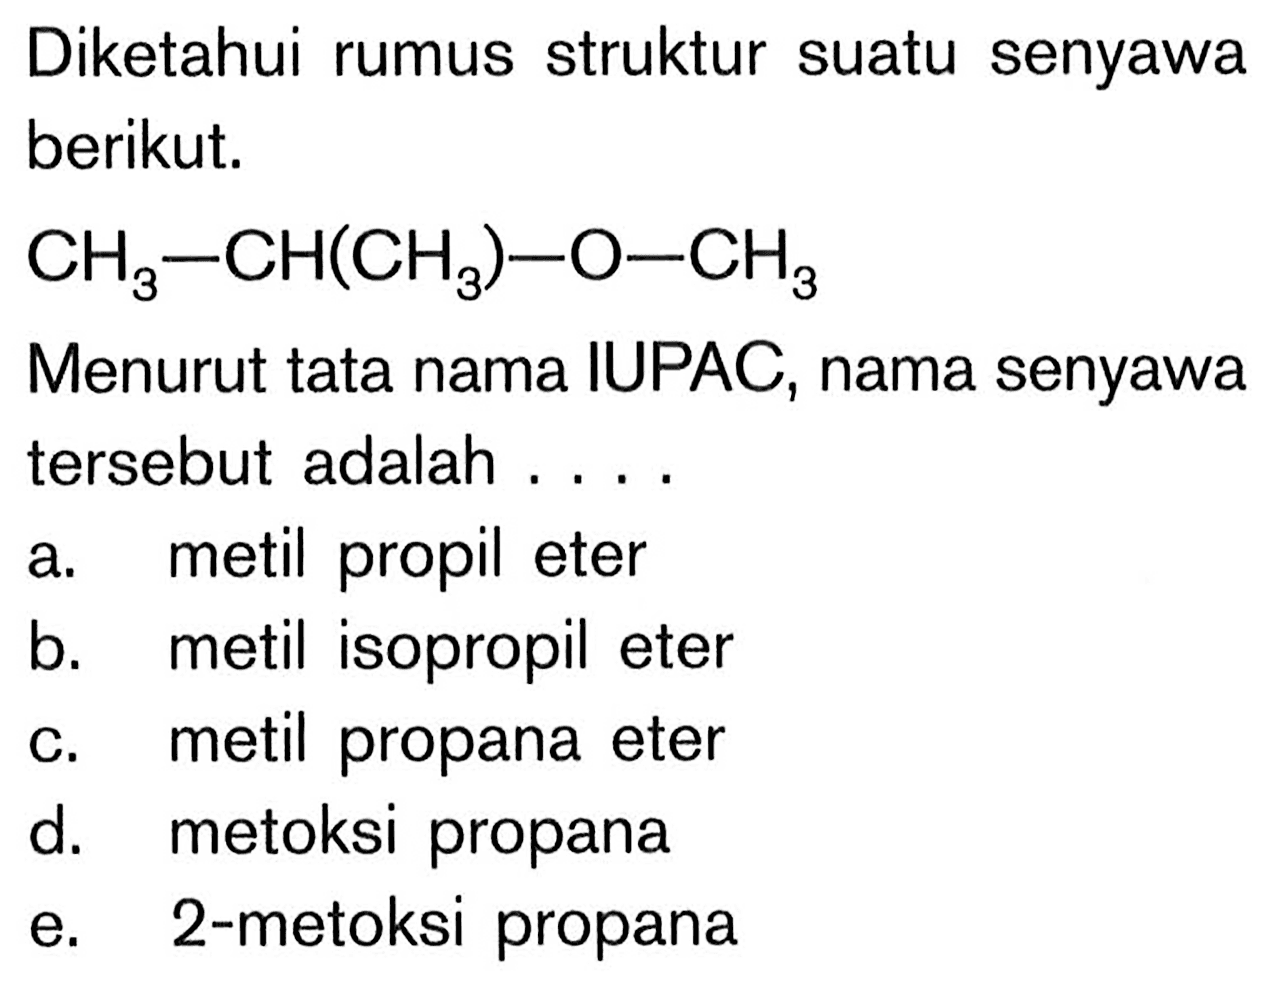 Diketahui rumus struktur suatu senyawa berikut. CH3-CH(CH3)-O-CH3 Menurut tata nama IUPAC, nama senyawa tersebut adalah .... 